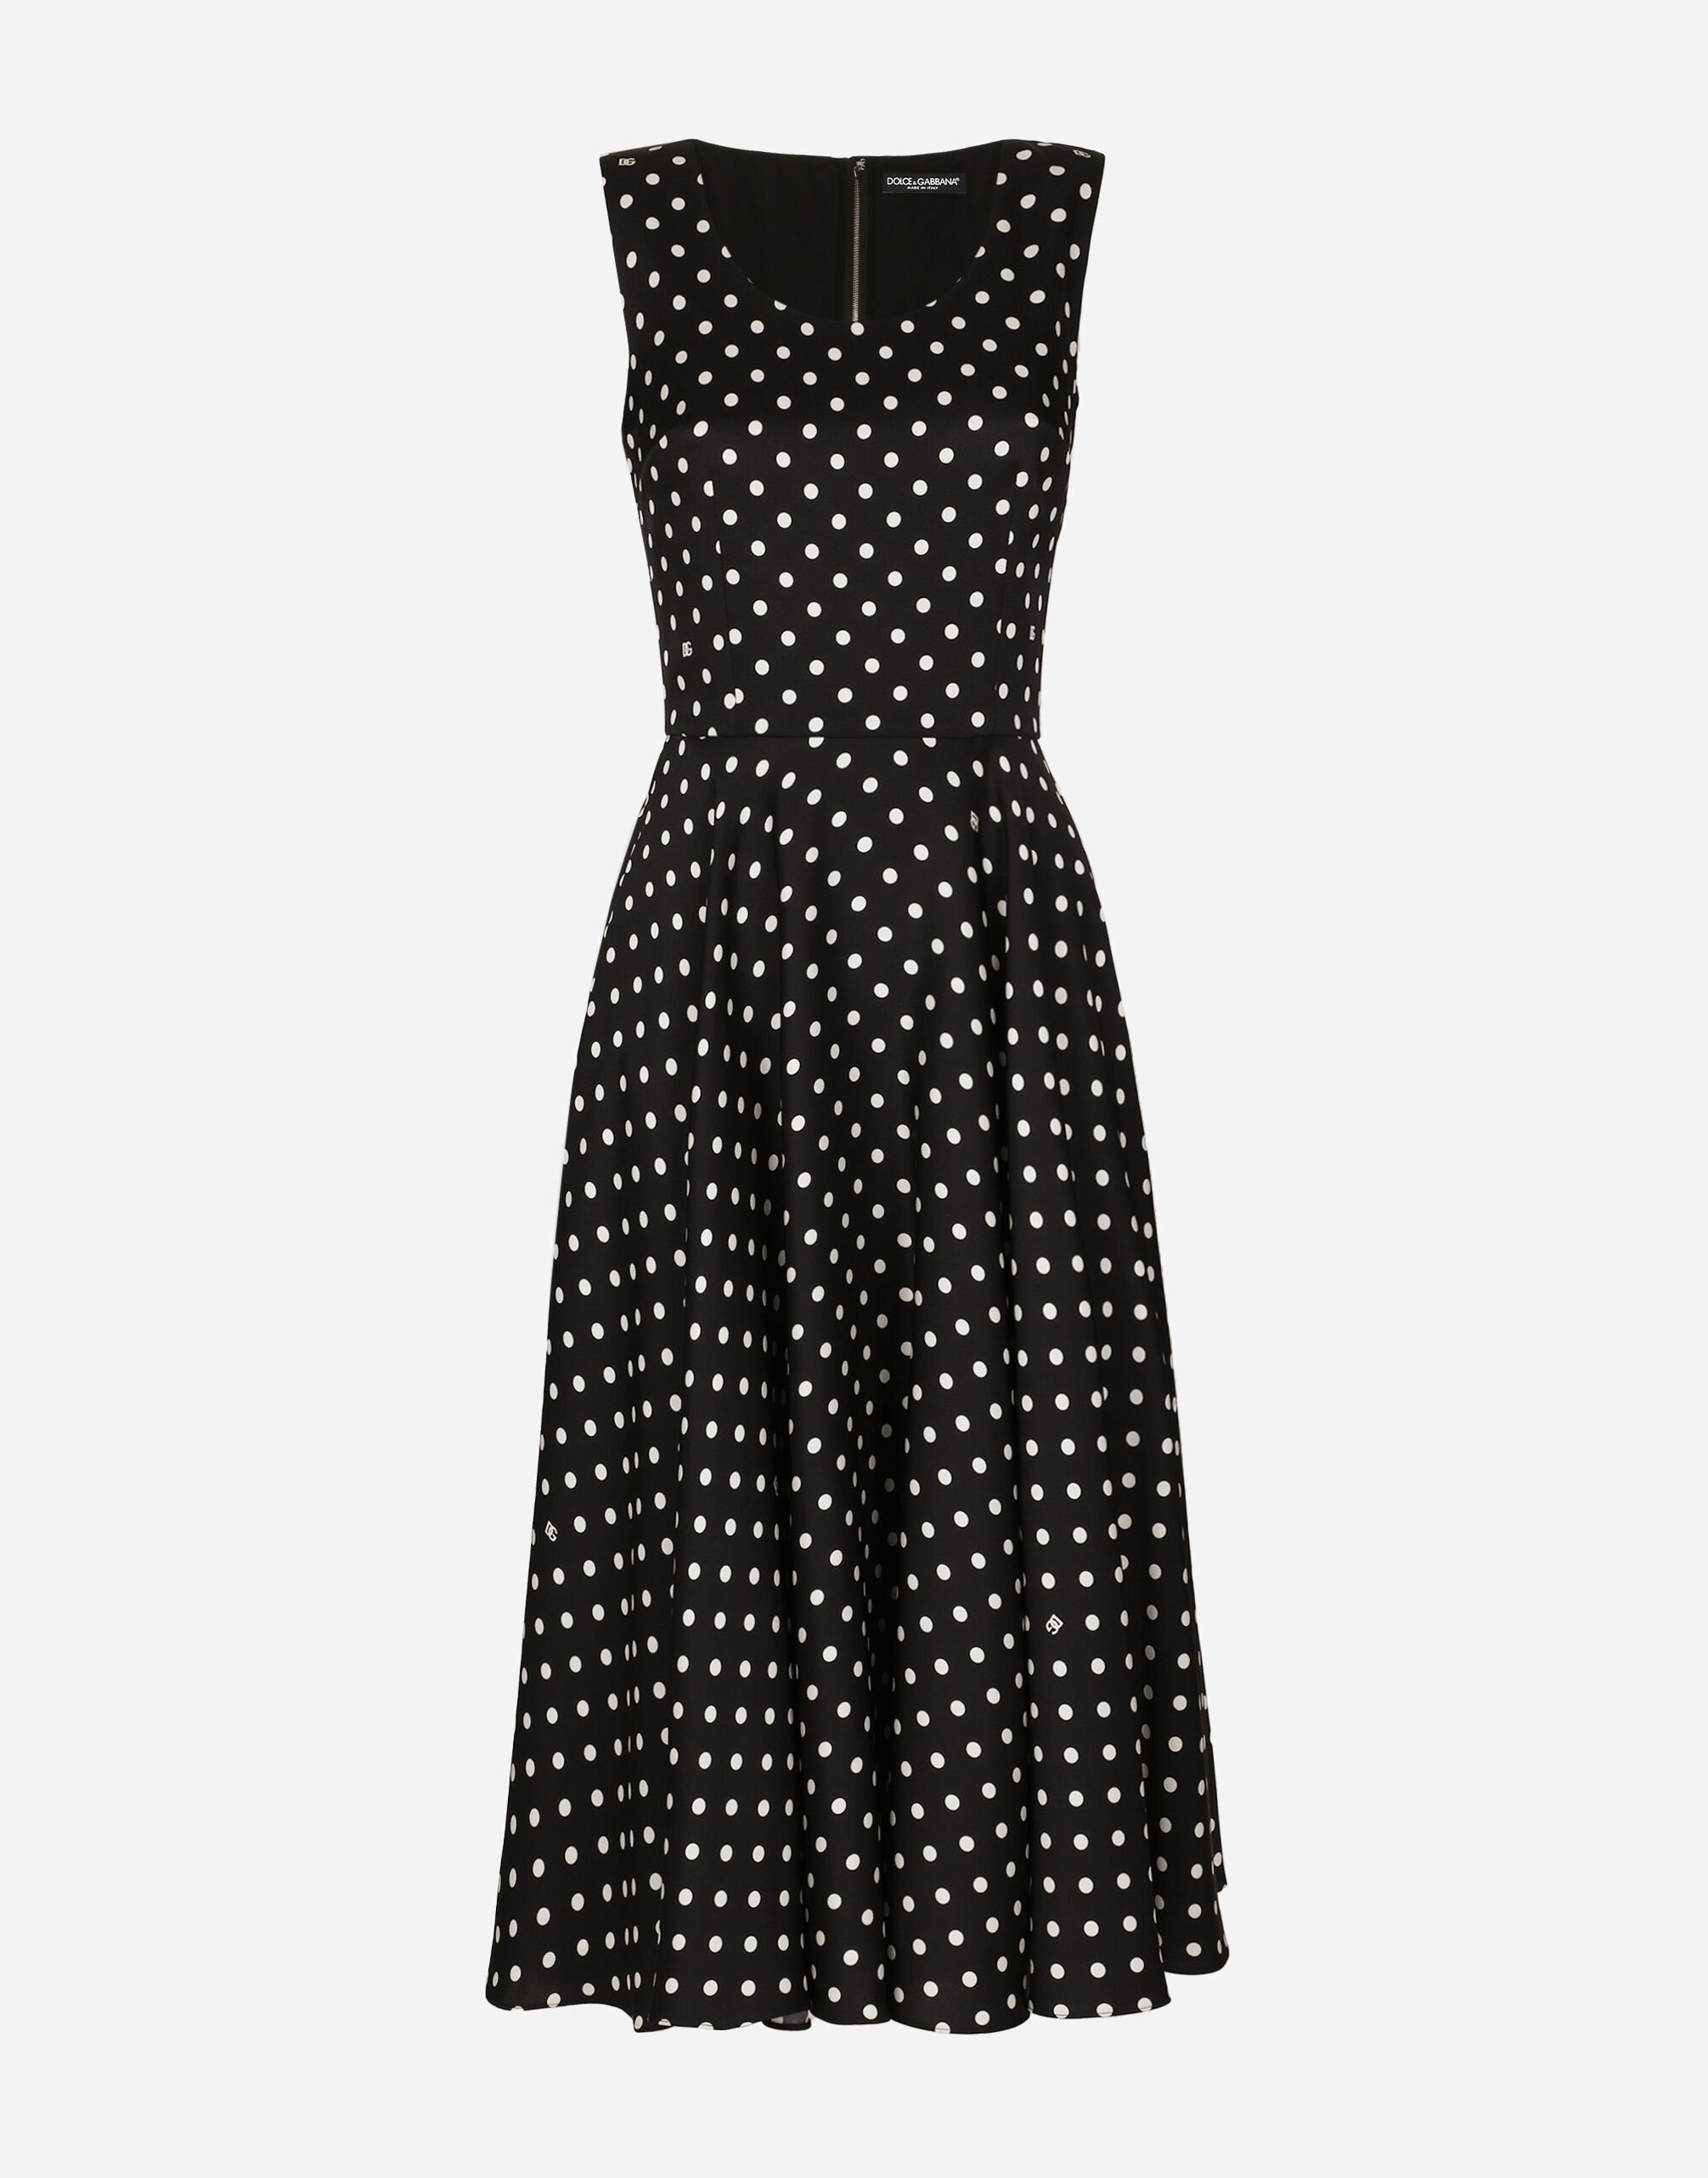 Silk charmeuse calf-length circle-skirt dress with polka-dot print - 1